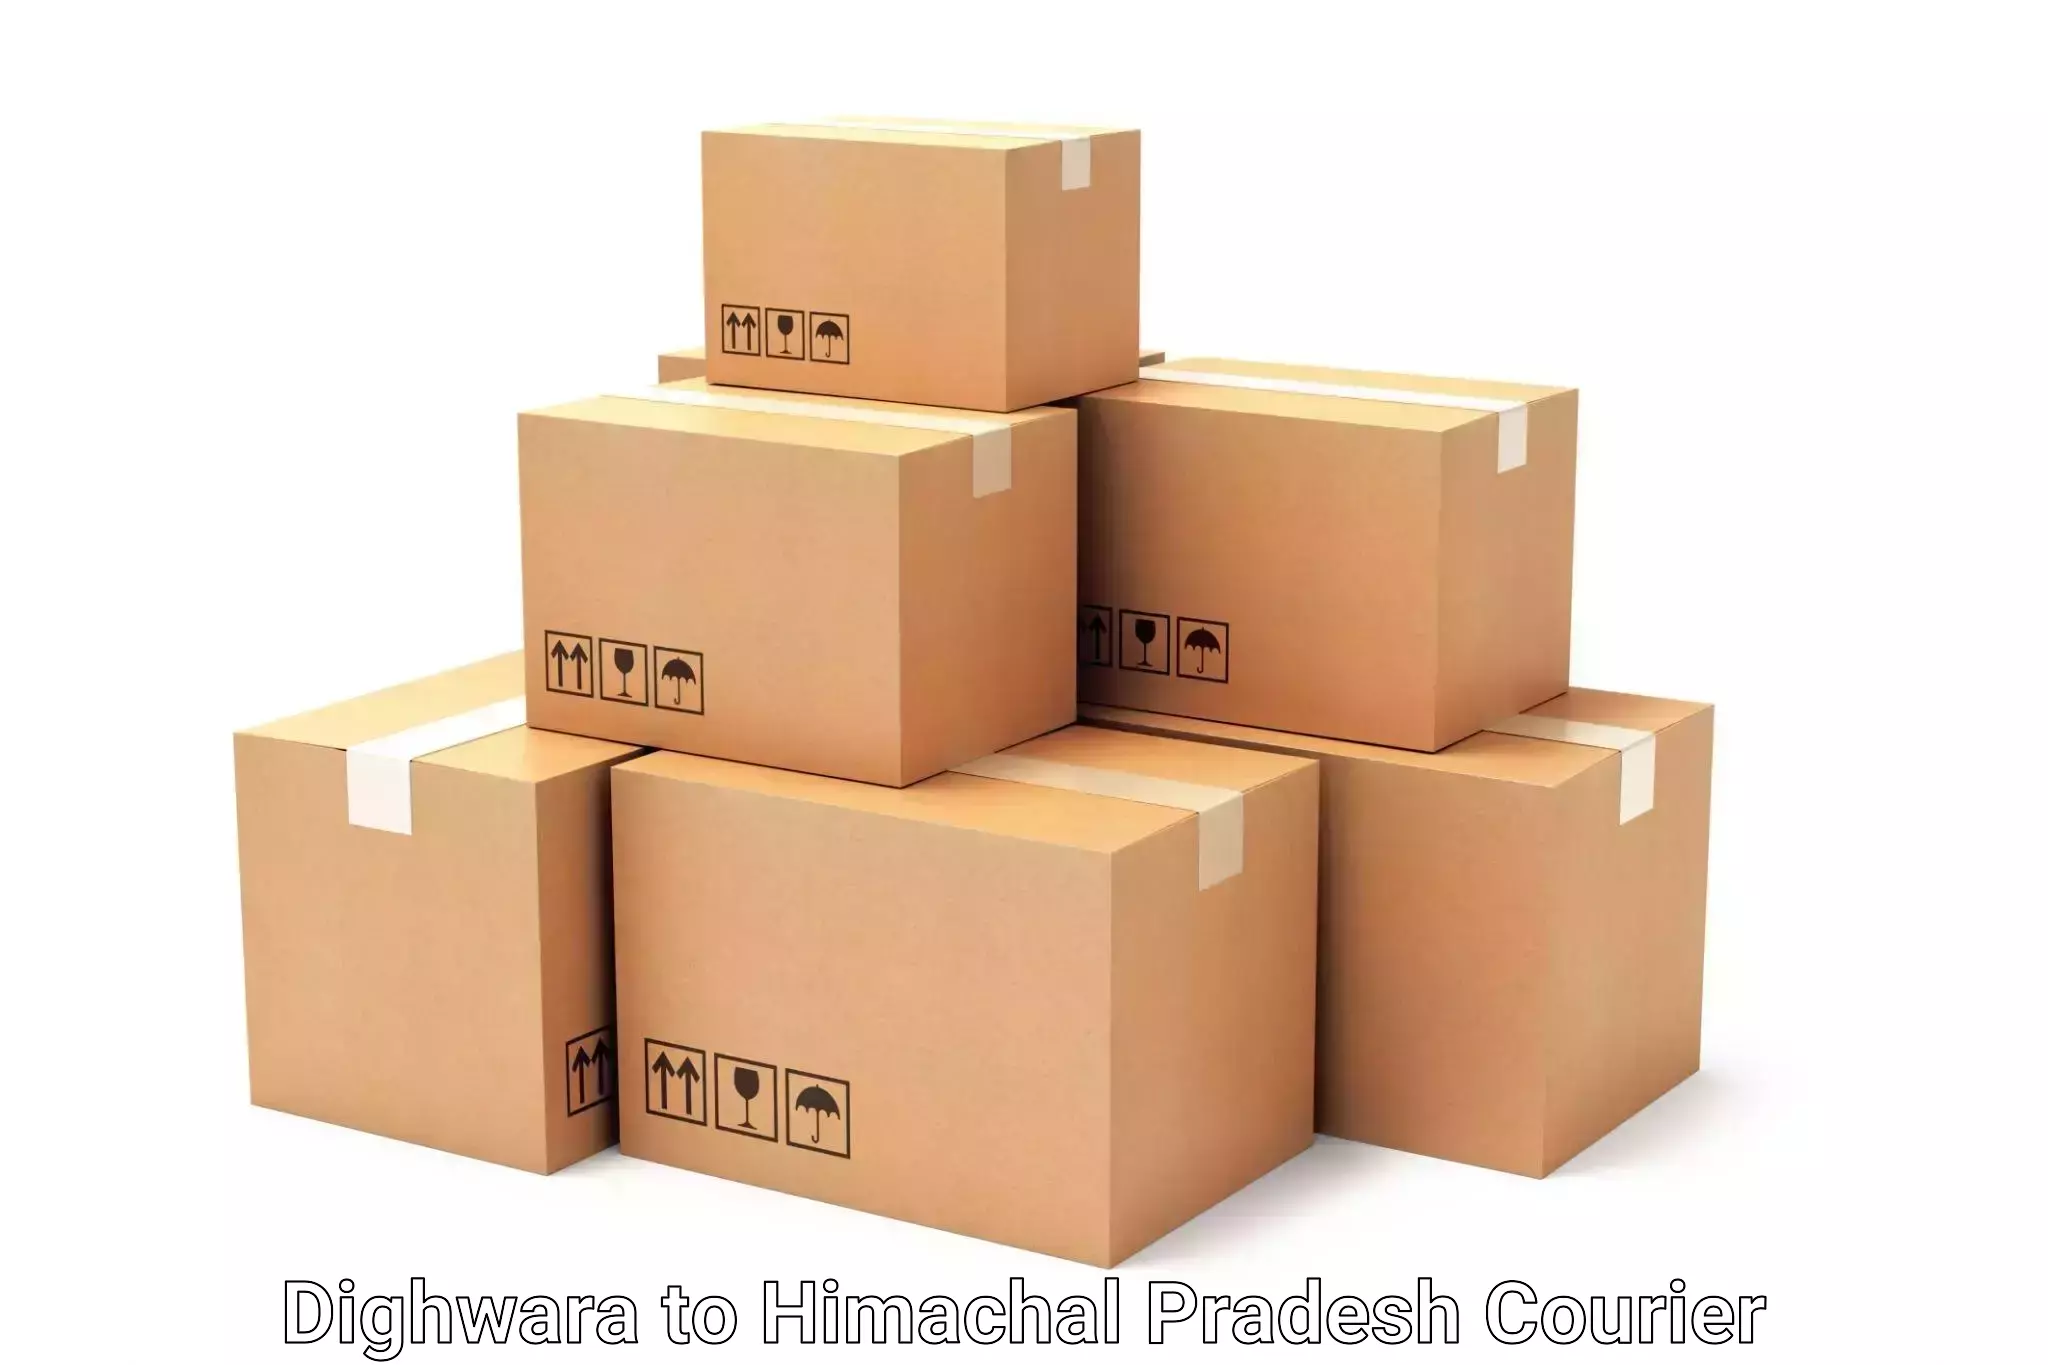 Luggage shipping discounts in Dighwara to Bilaspur Himachal Pradesh